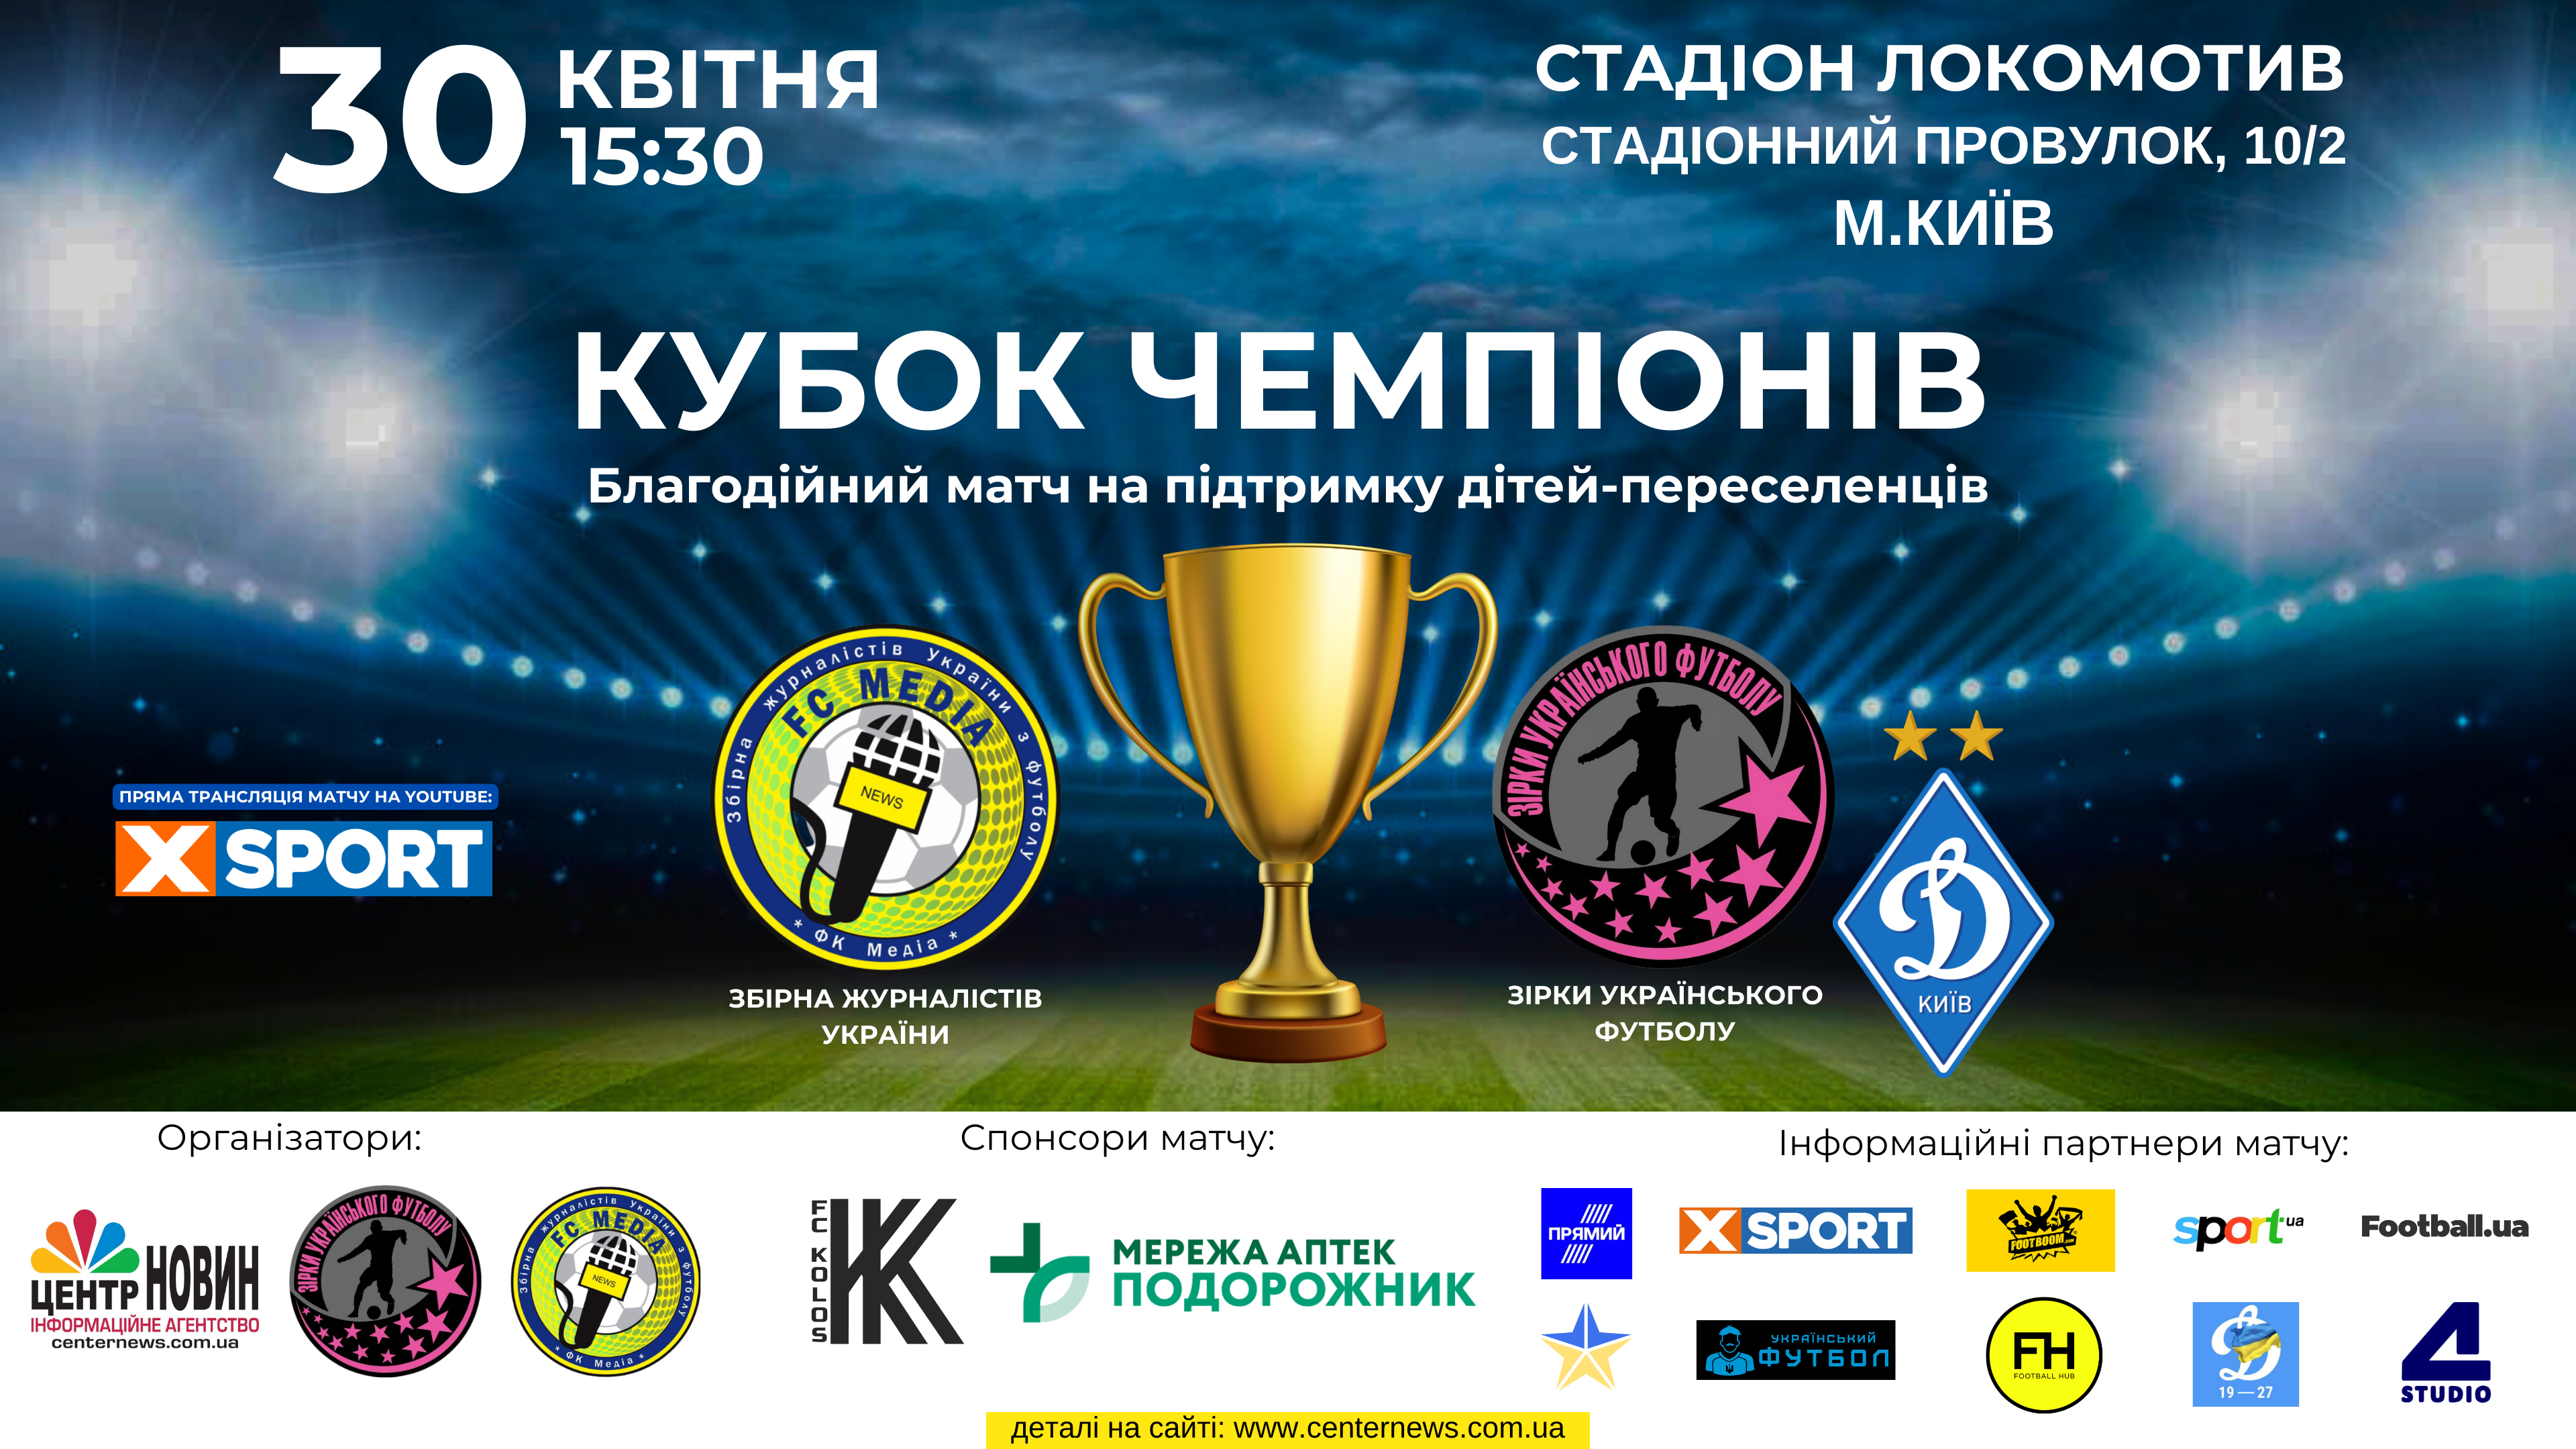 Зірки українського футболу та збірна журналістів на підтримку дітей-переселенців зіграють благодійний матч